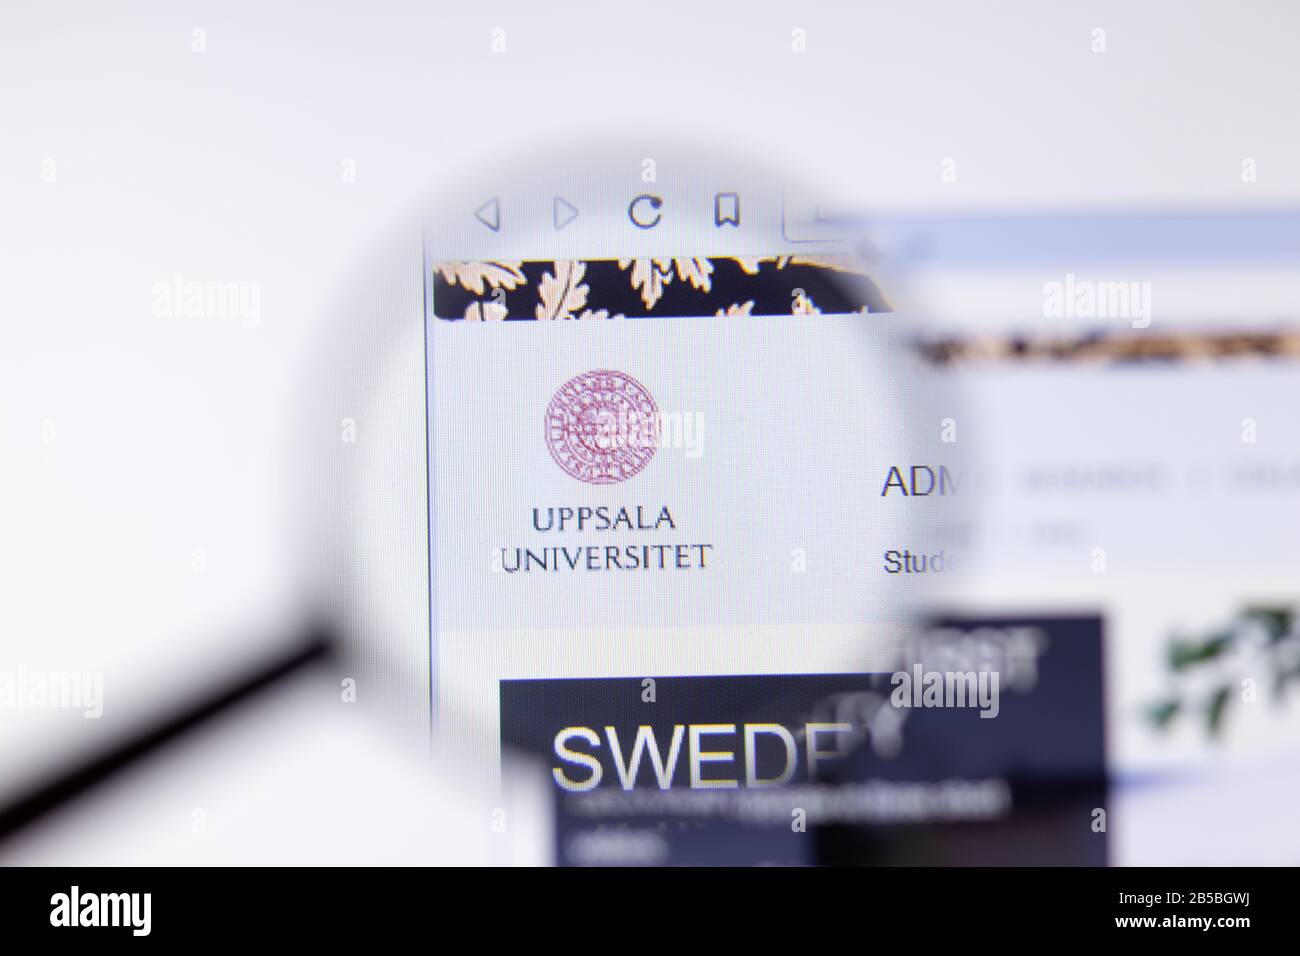 Los Angeles, California, EE.UU. - 7 de marzo de 2020: Página principal de la Universidad de Uppsala logotipo visible en primer plano, Editorial Ilustrativa Foto de stock